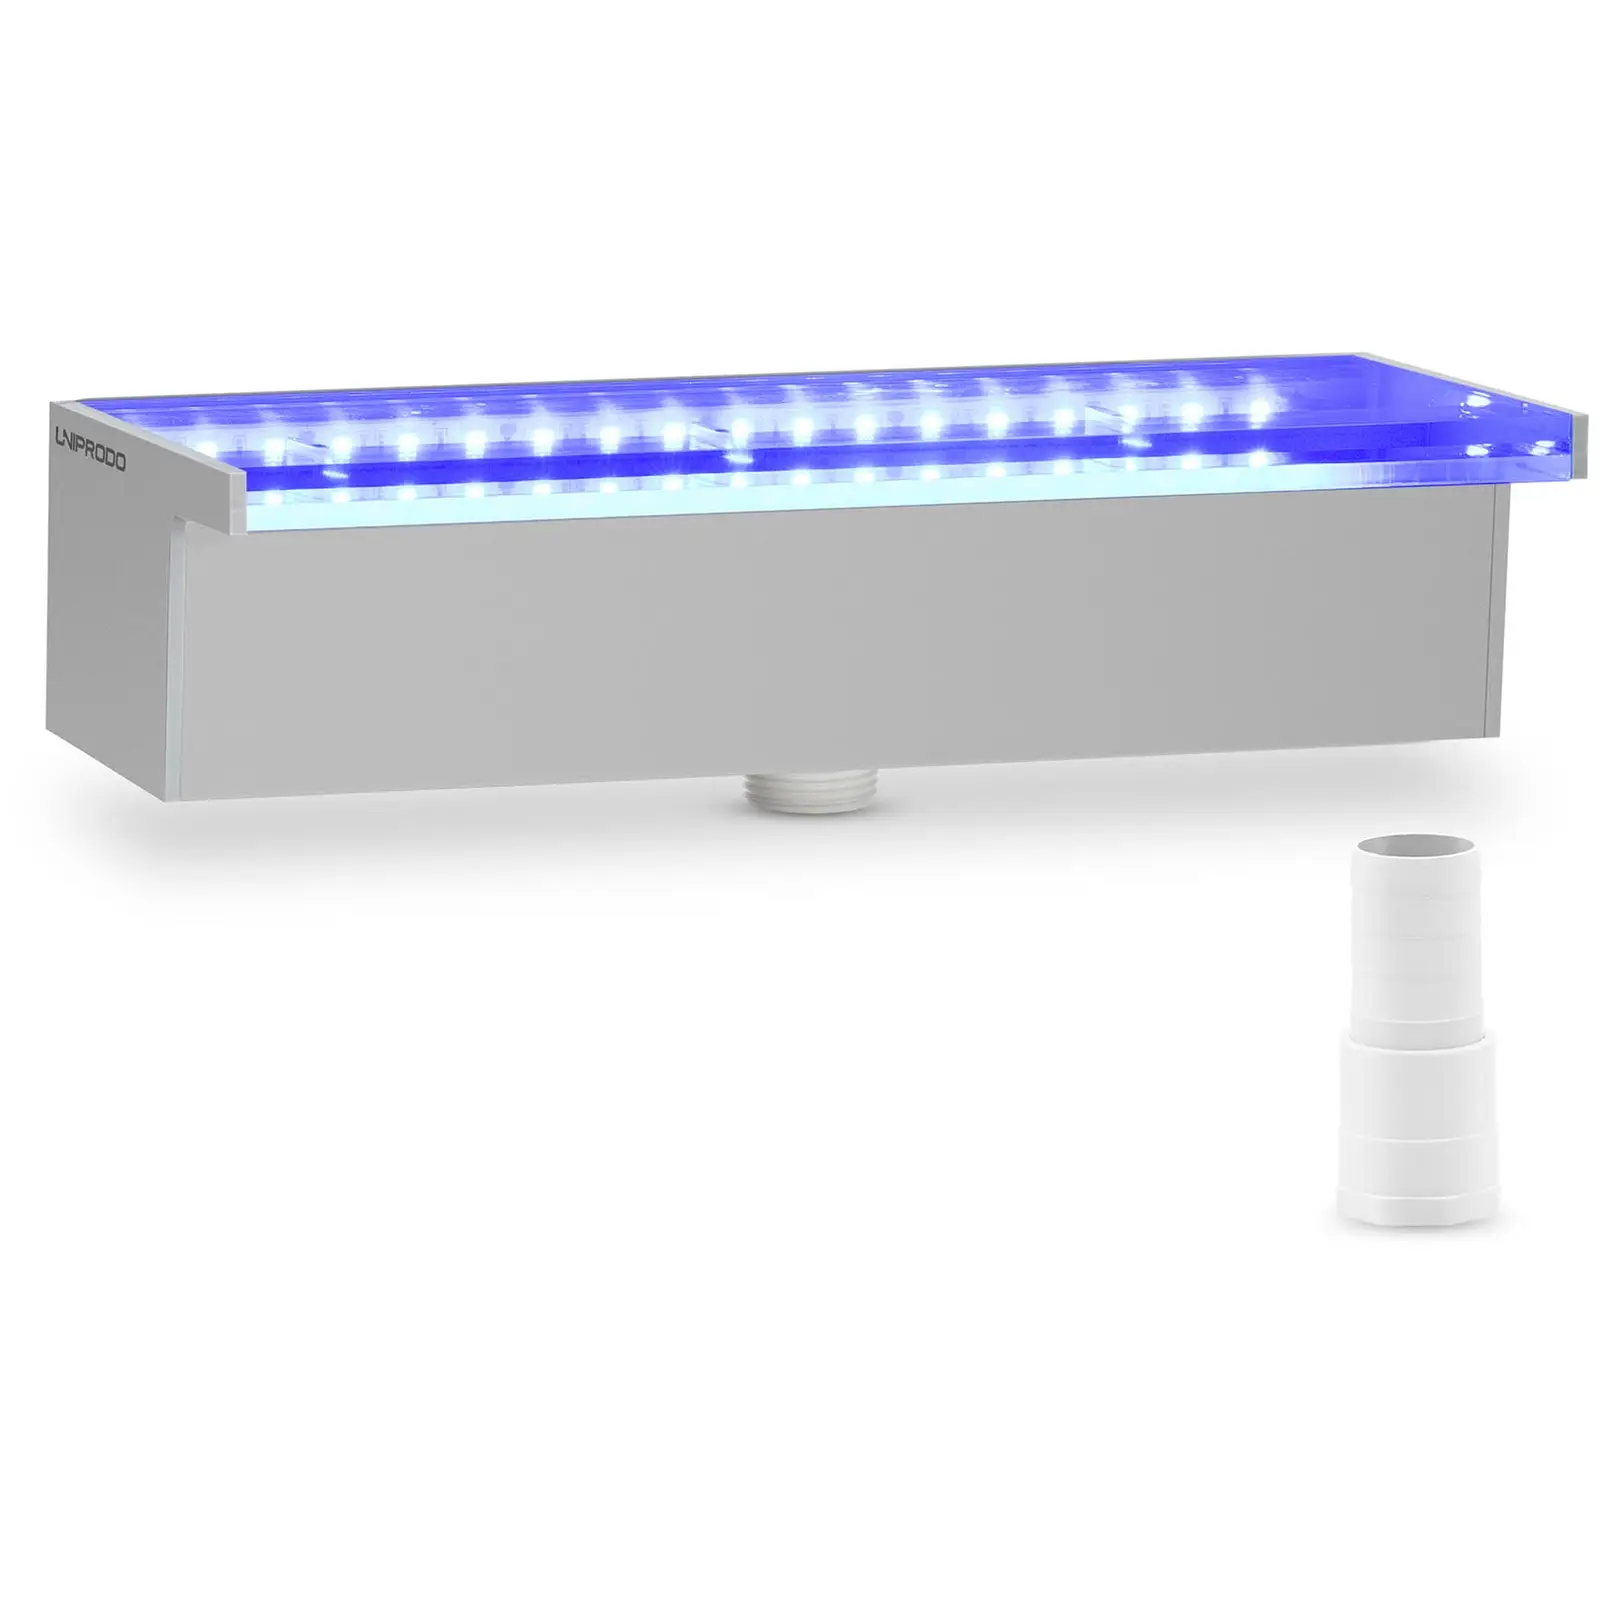 Chrlič vody 30 cm LED osvětlení modrá/bílá barva nízký vývod vody - Chrliče vody Uniprodo